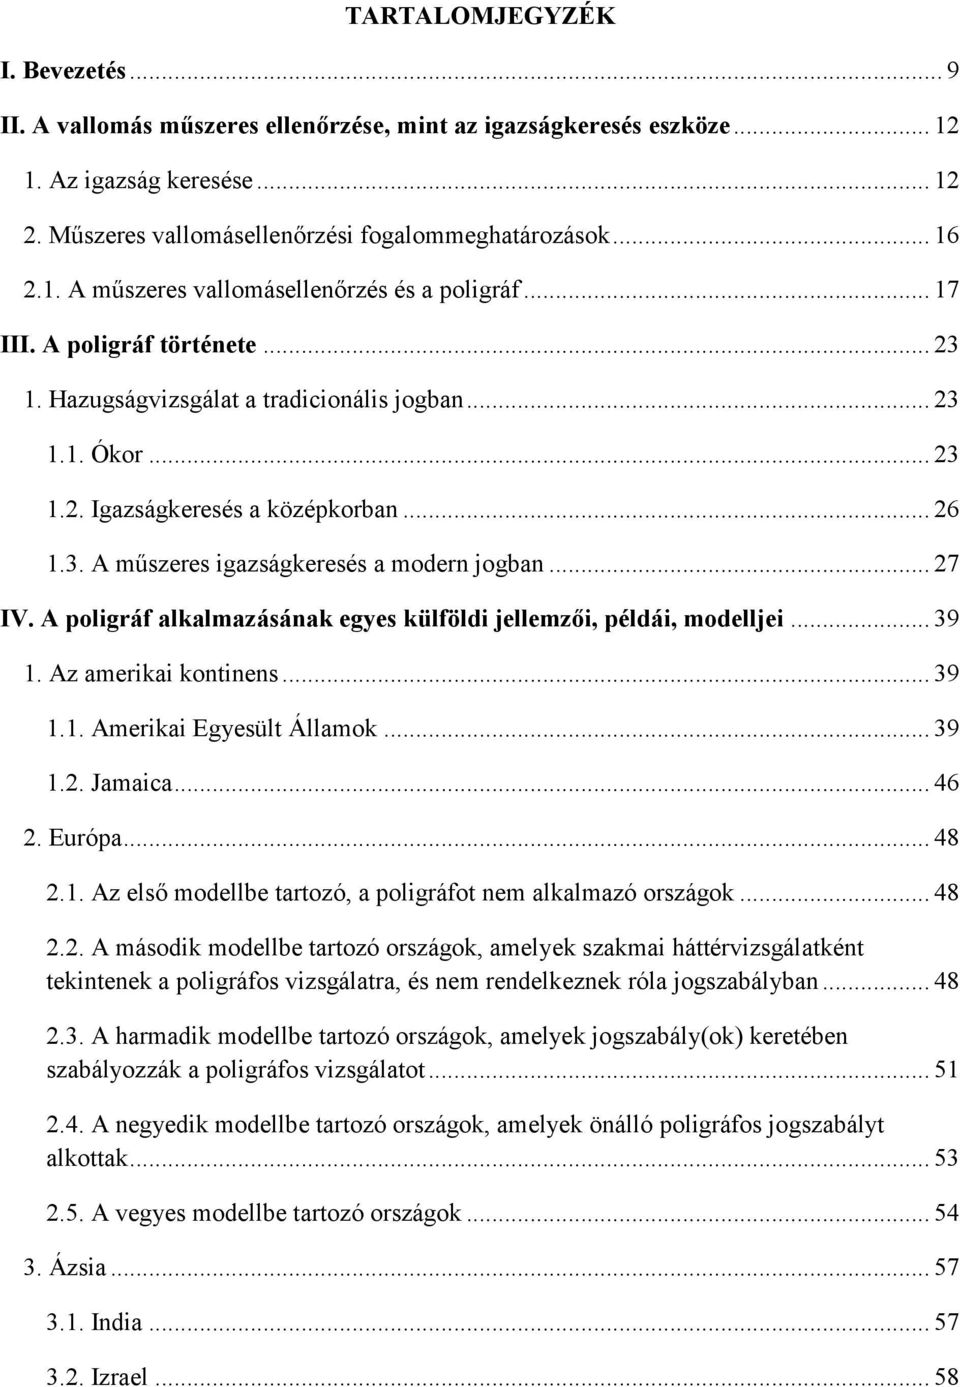 A műszeres vallomásellenőrzés, különös tekintettel a poligráfos vizsgálatra  - PDF Ingyenes letöltés